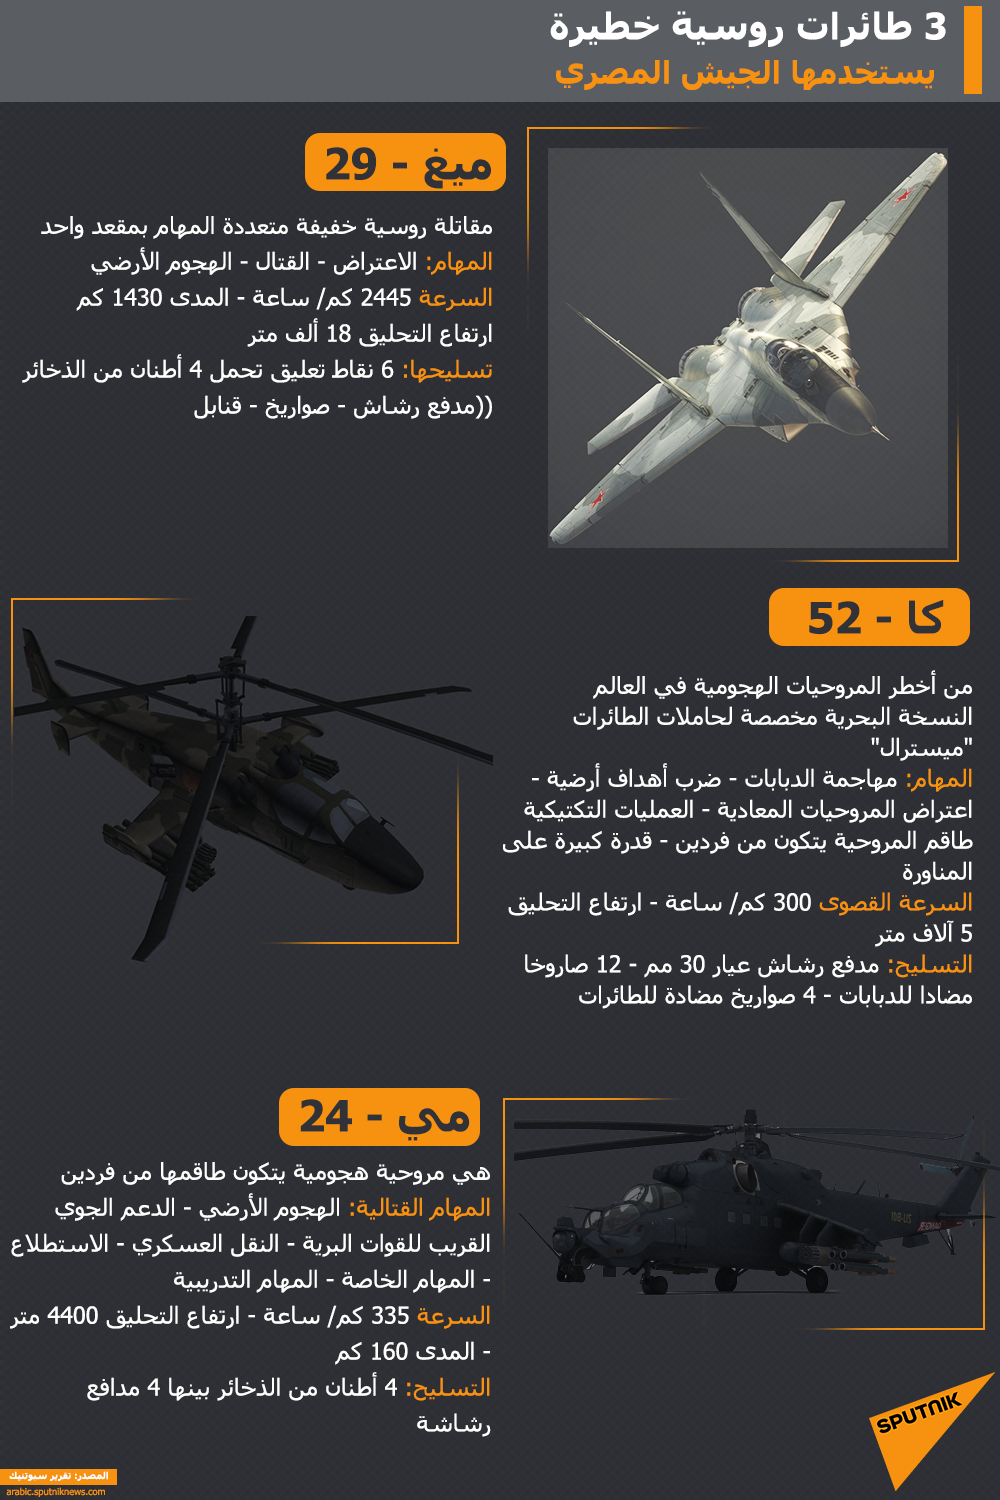 3 طائرات روسية خطيرة ظهرت خلال حديث السيسي عن الجيش المصري - سبوتنيك عربي